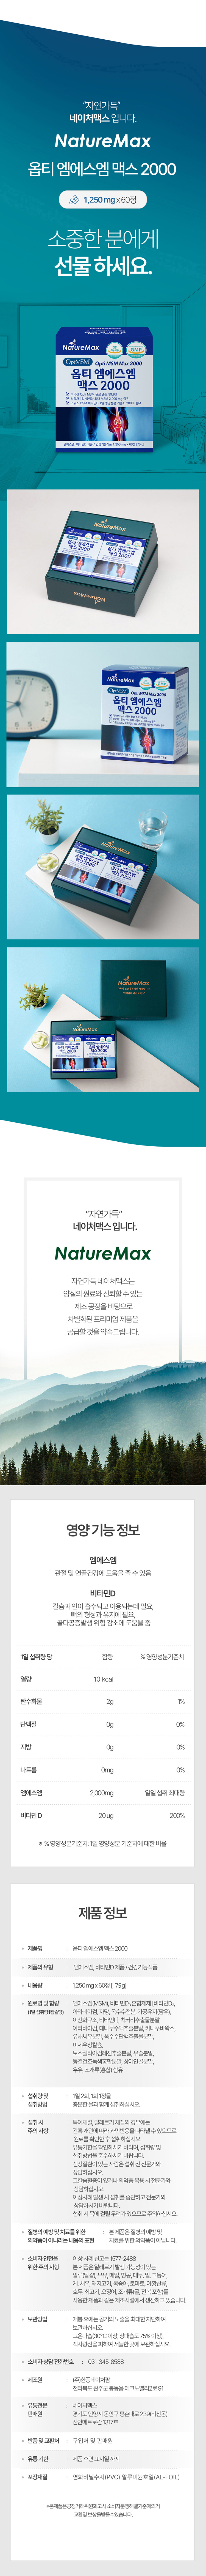 naturemax_opti_msm_max2000_750_5.jpg